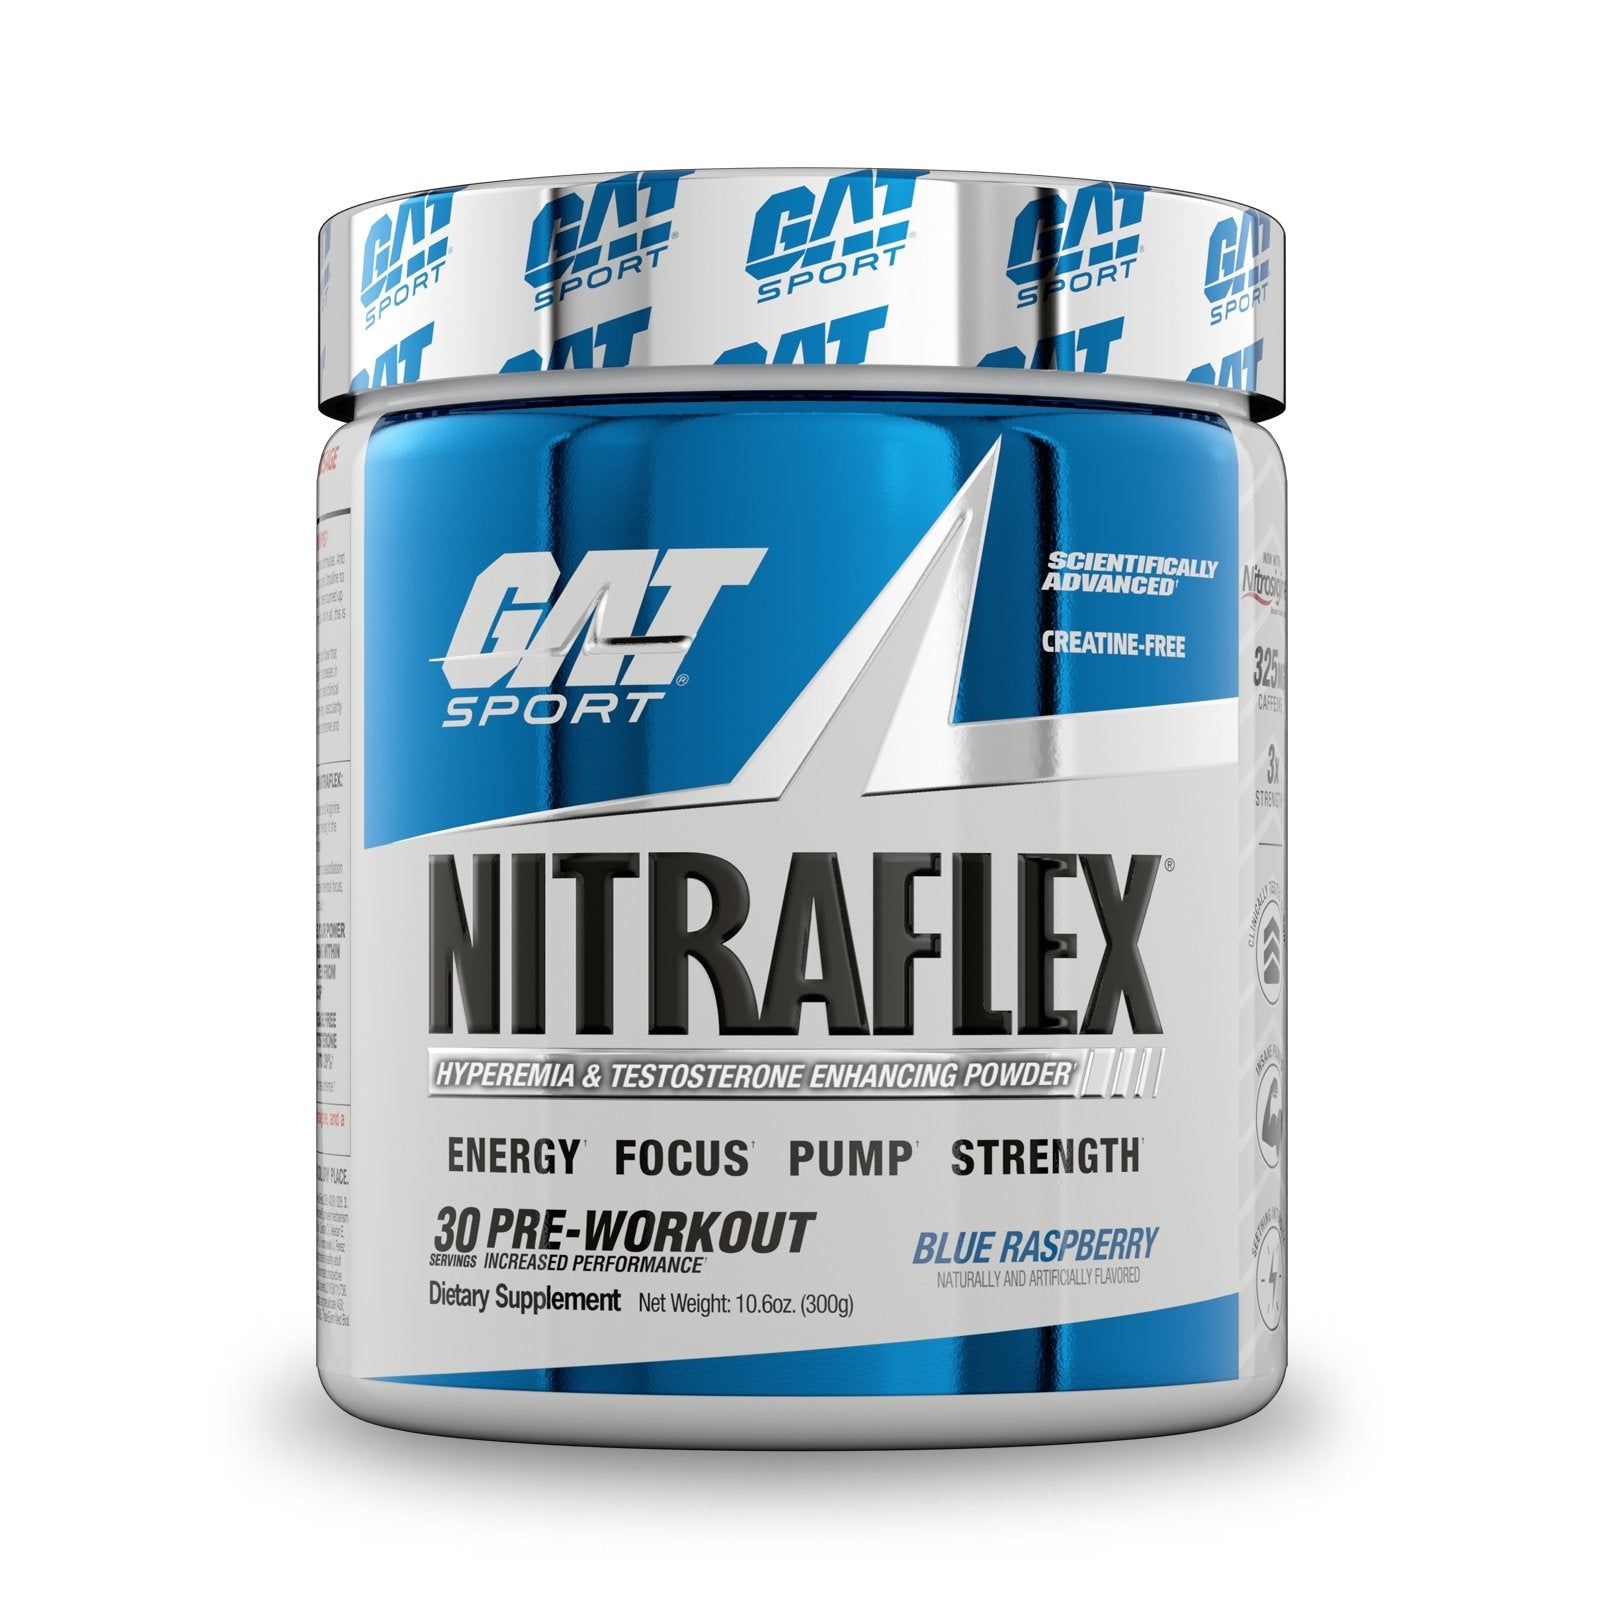 GAT NITRAFLEX 30 SERVINGS - Probodyonline